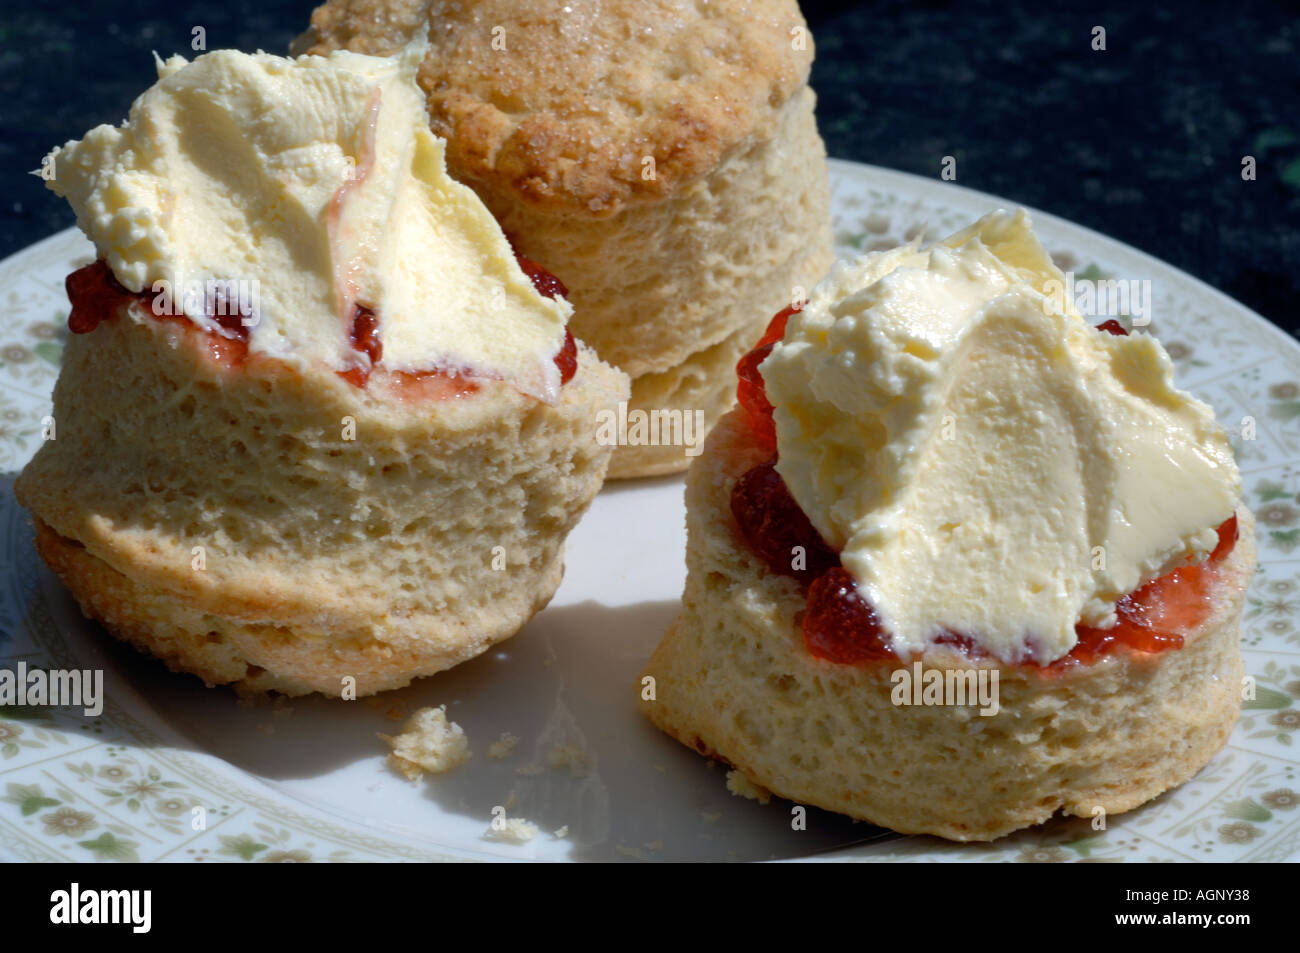 Cream Tea, Traditional Cream Tea, scones with jam and clotted cream Stock Photo